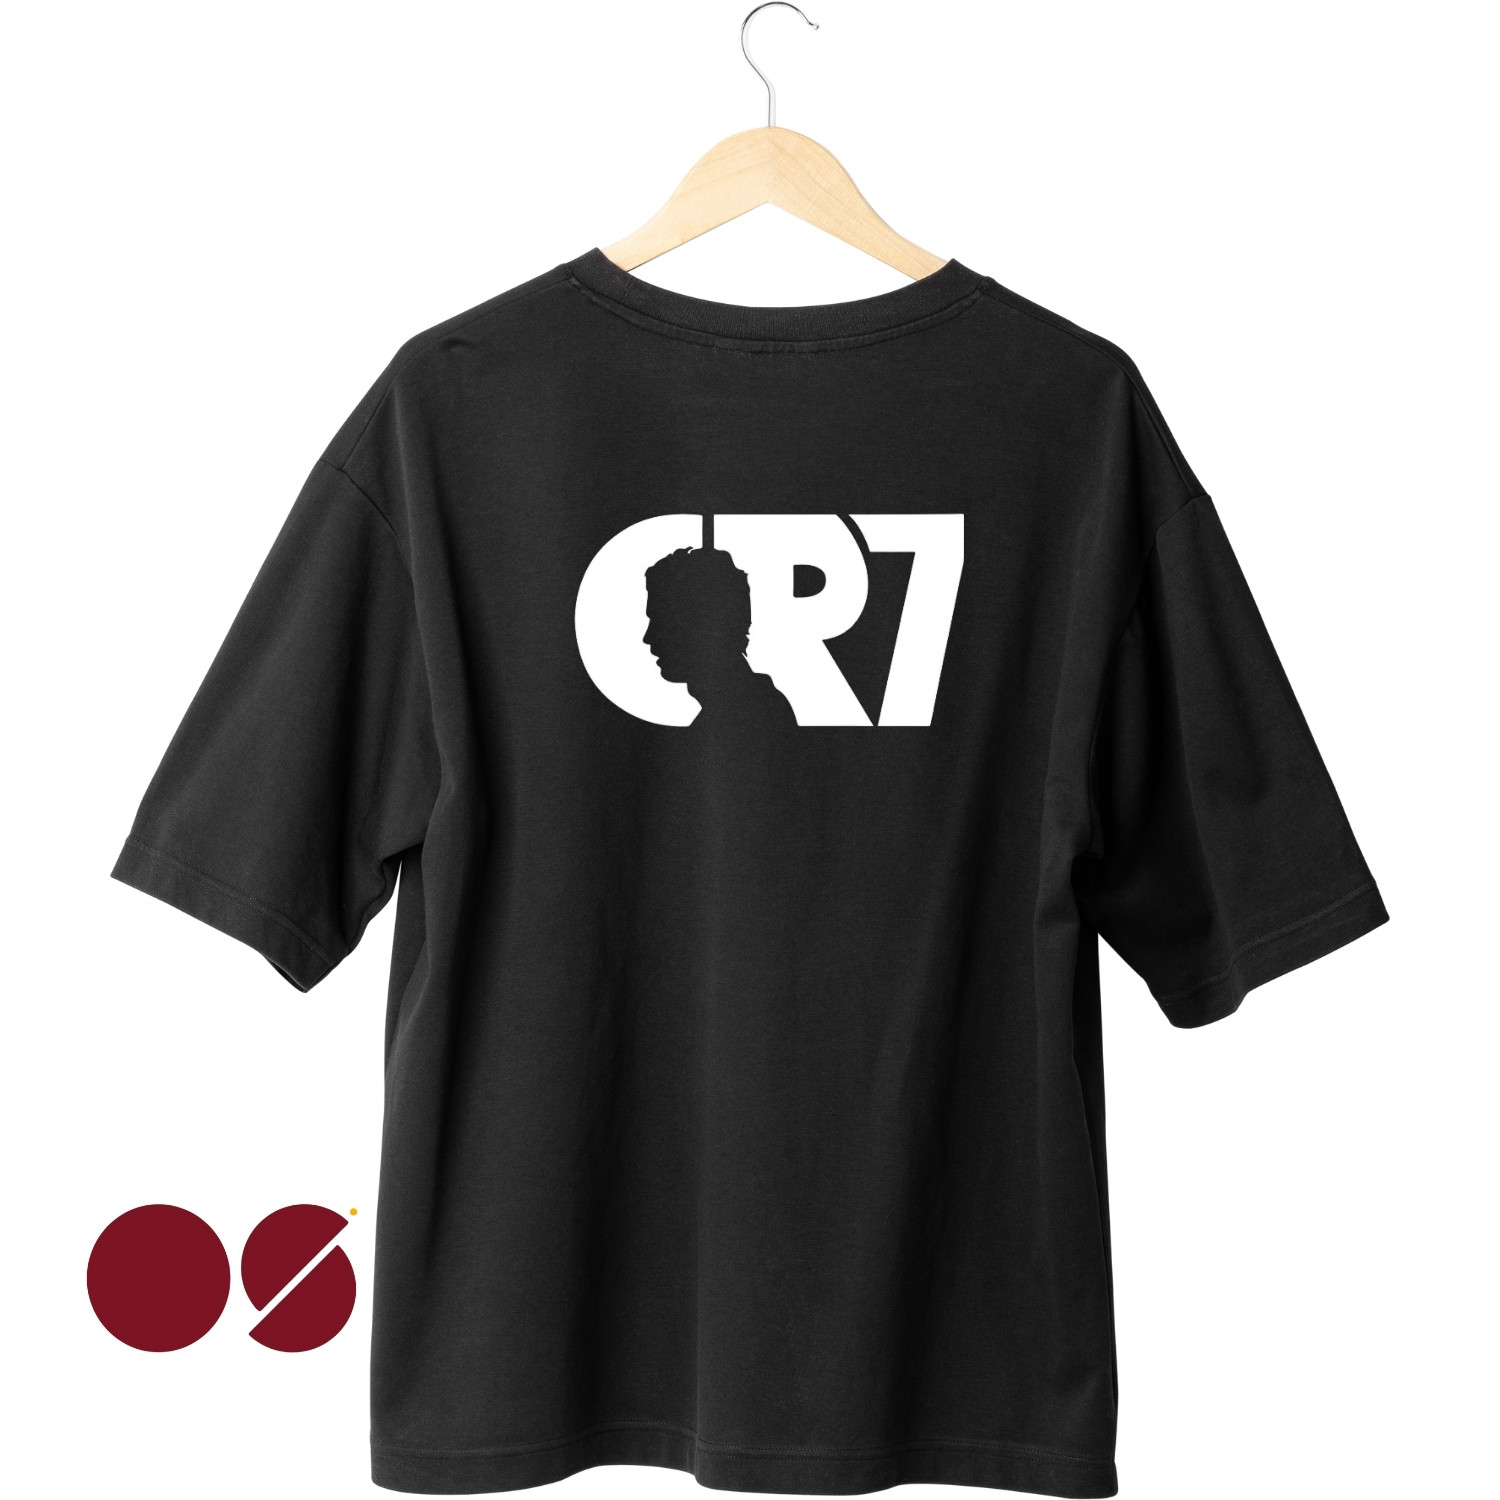 CR7 Unisex Drop Shoulder T-Shirt